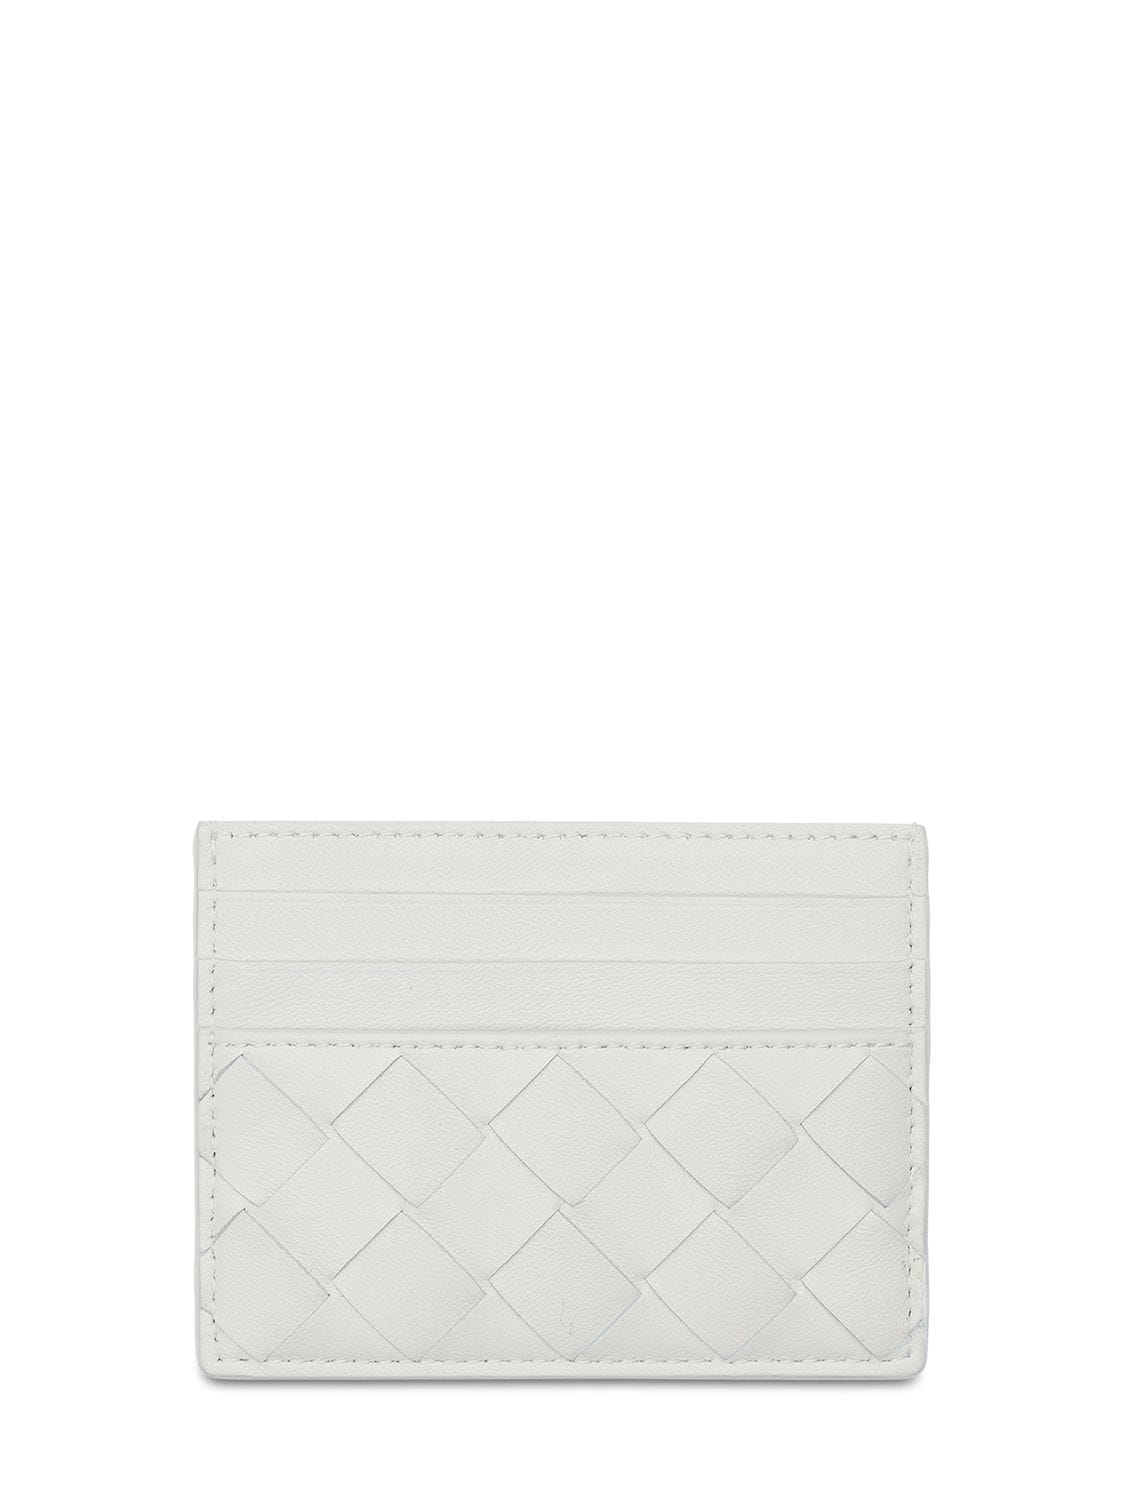 Bottega Veneta Intrecciato Leather Card Holder In White